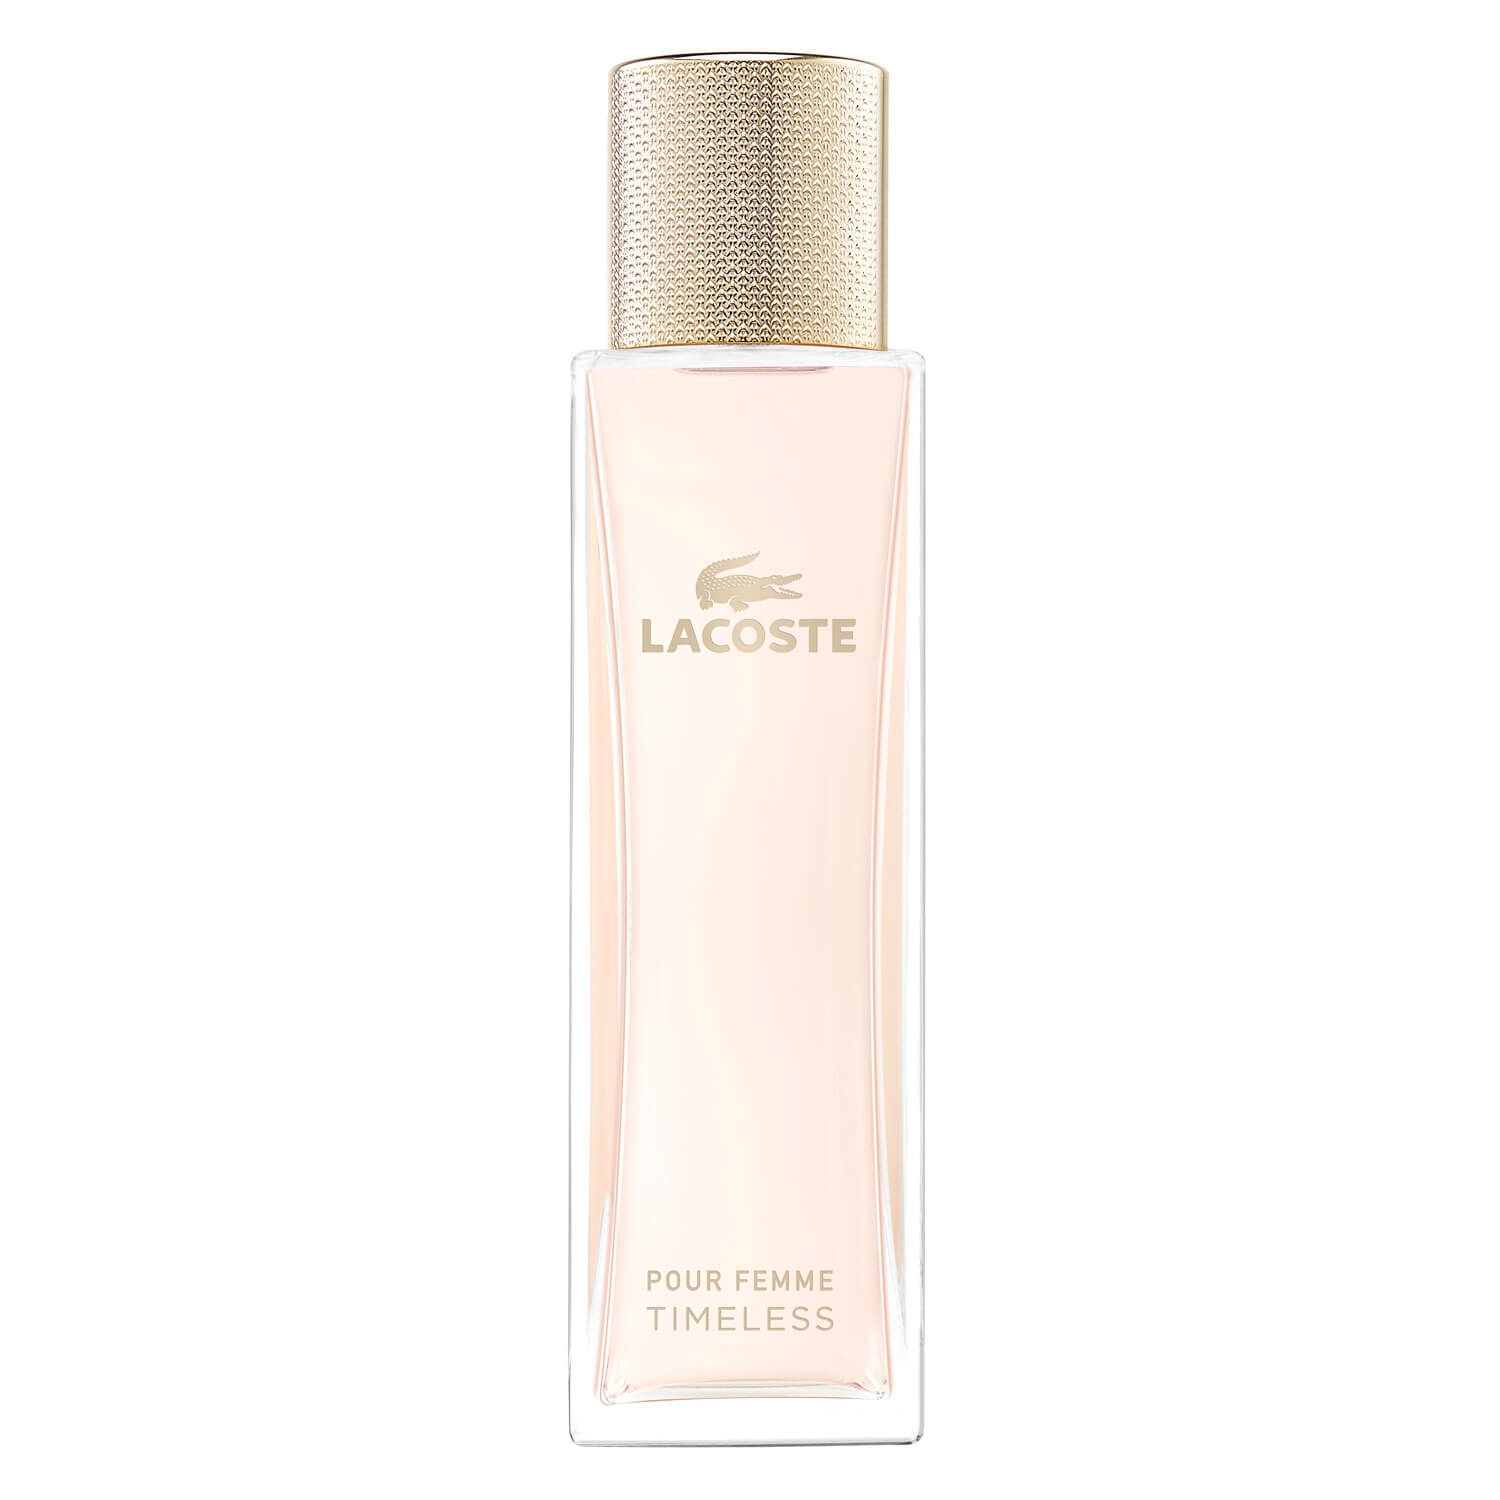 Produktbild von Lacoste Pour Femme - Timeless Eau de Parfum